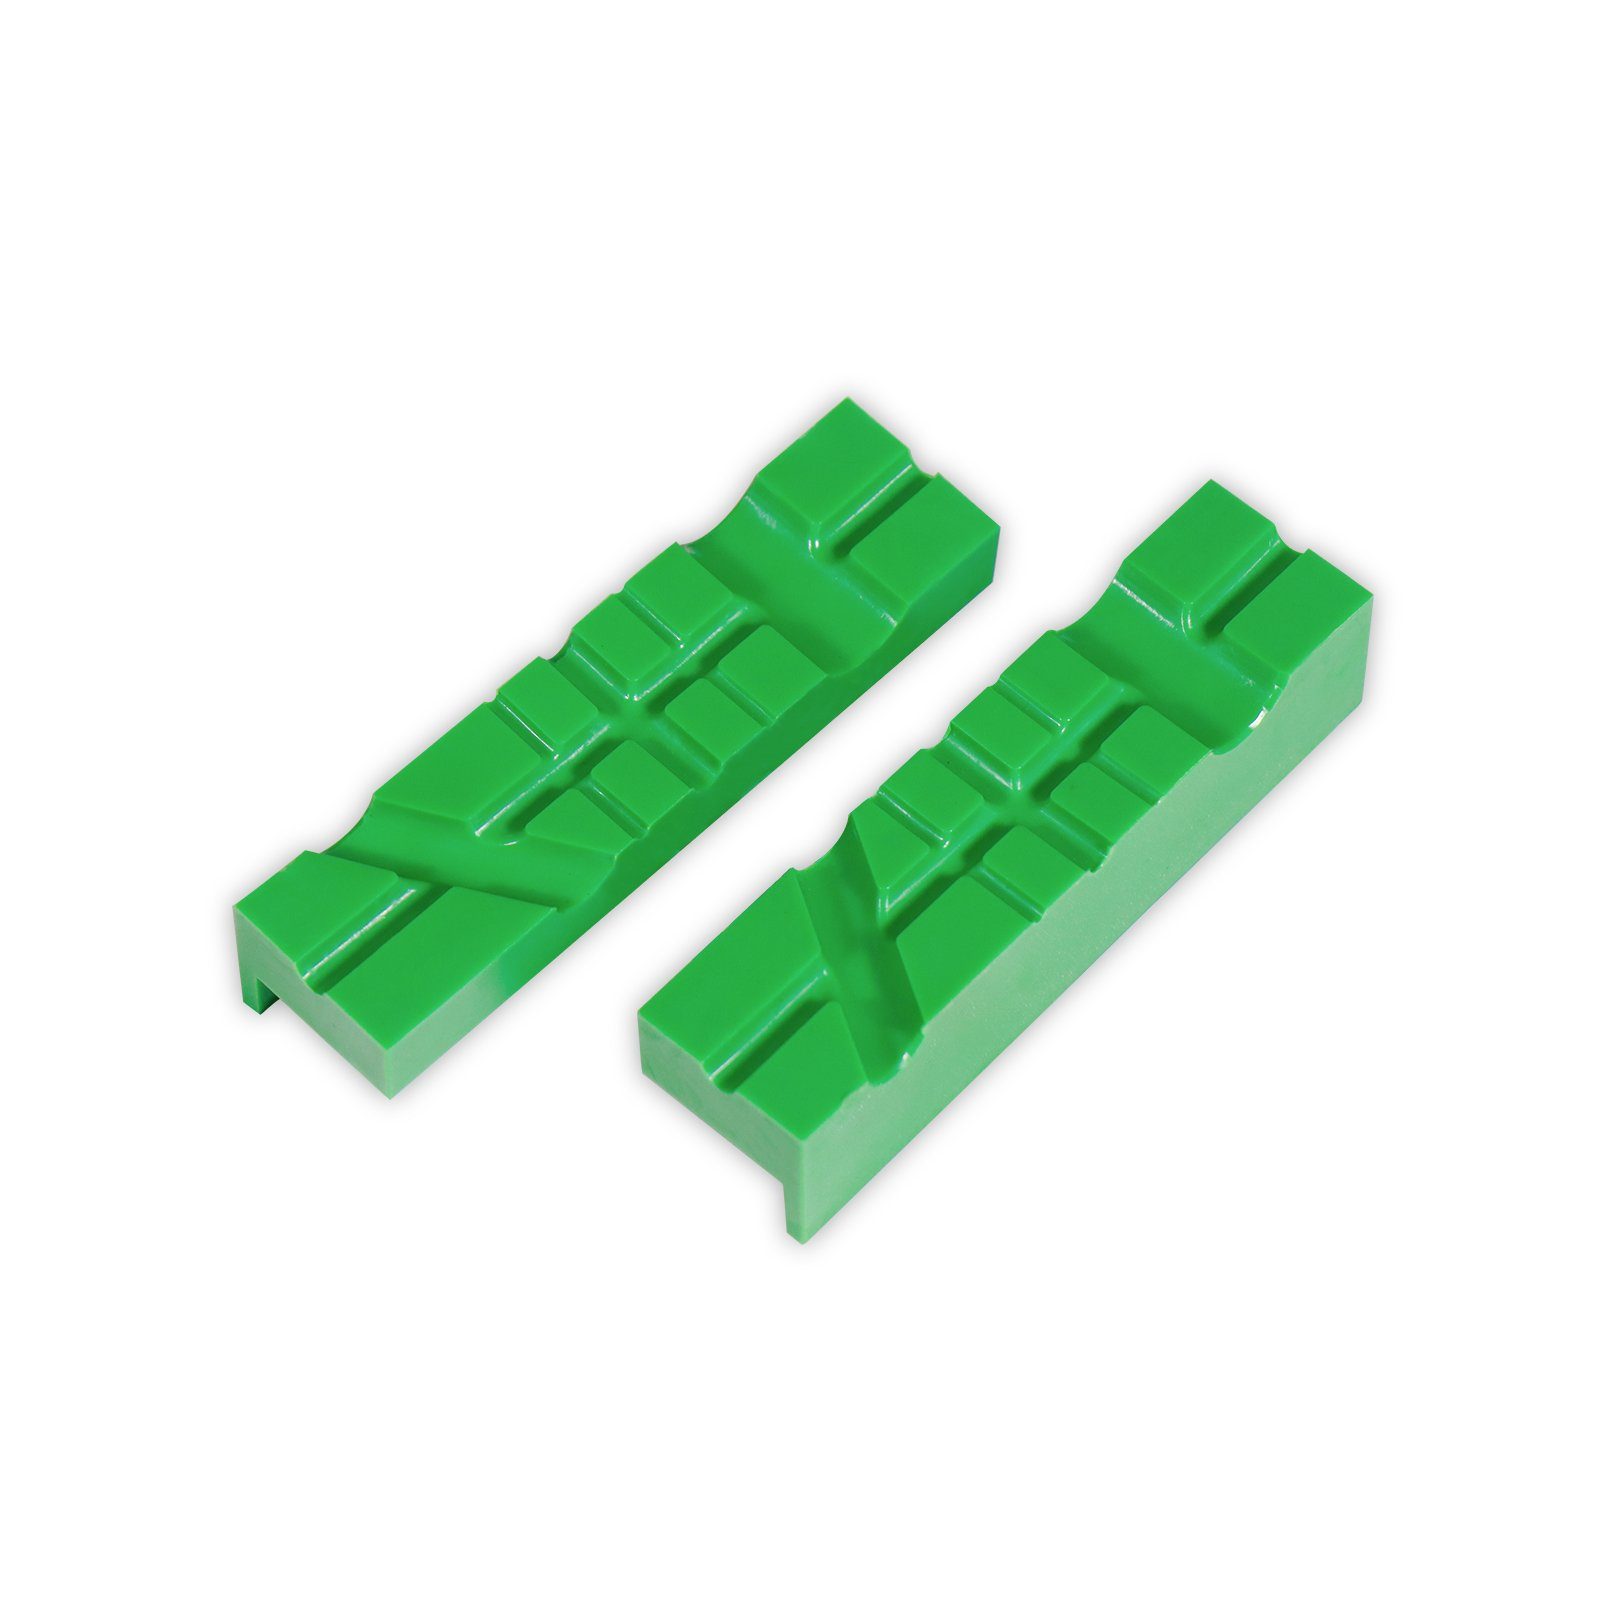 CCLIFE Schraubstock 2 tlg 150mm Breite Magnet grün / mit Schraubstock-Schutzbacken 110mm